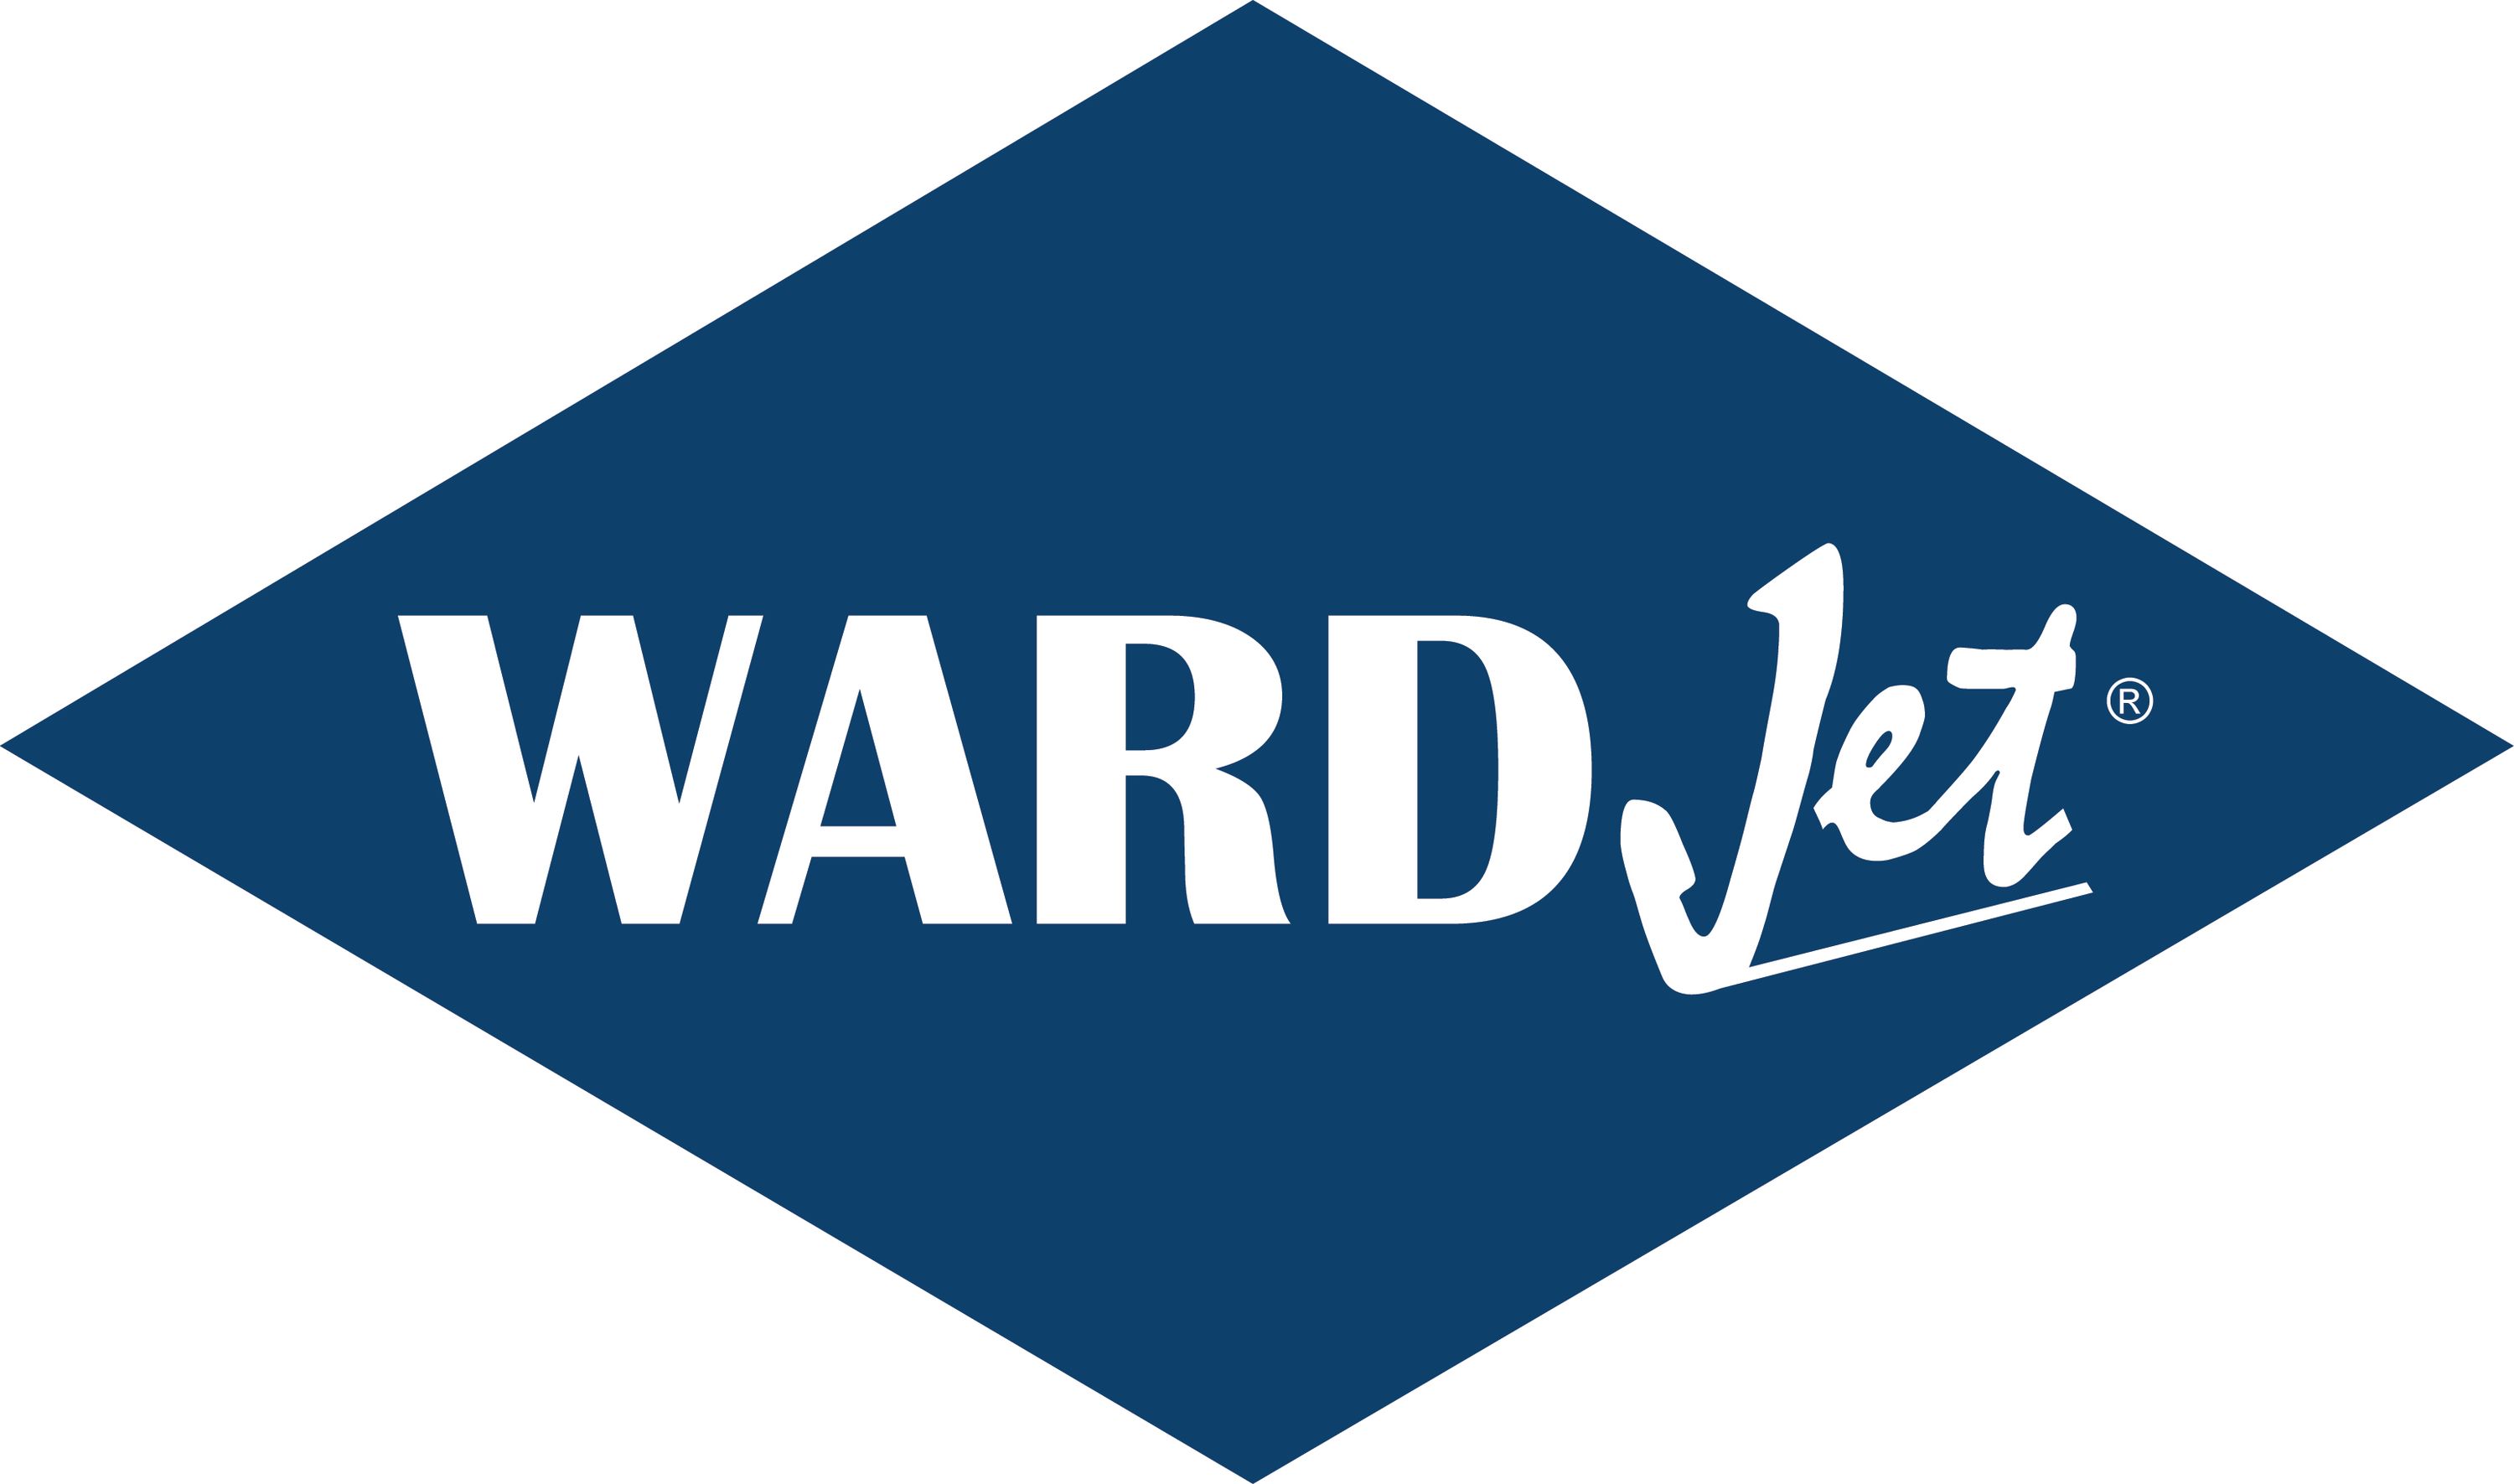 Wardjet logo   mark   blue large 1